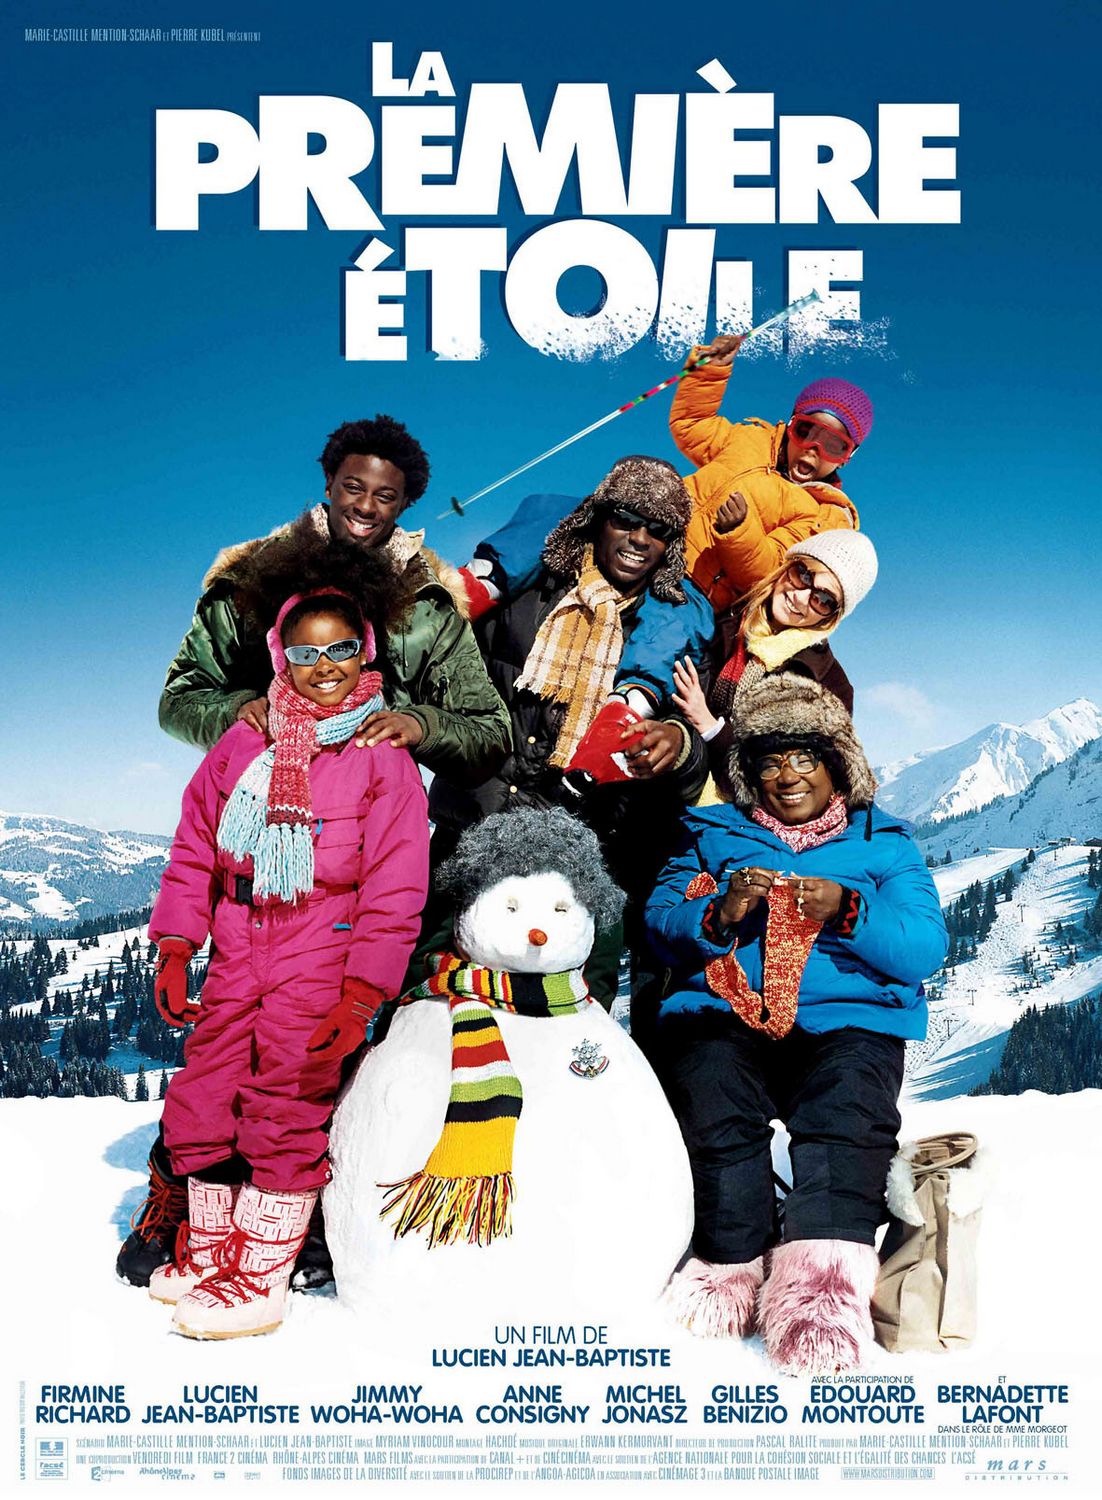 Extra Large Movie Poster Image for Première étoile, La 